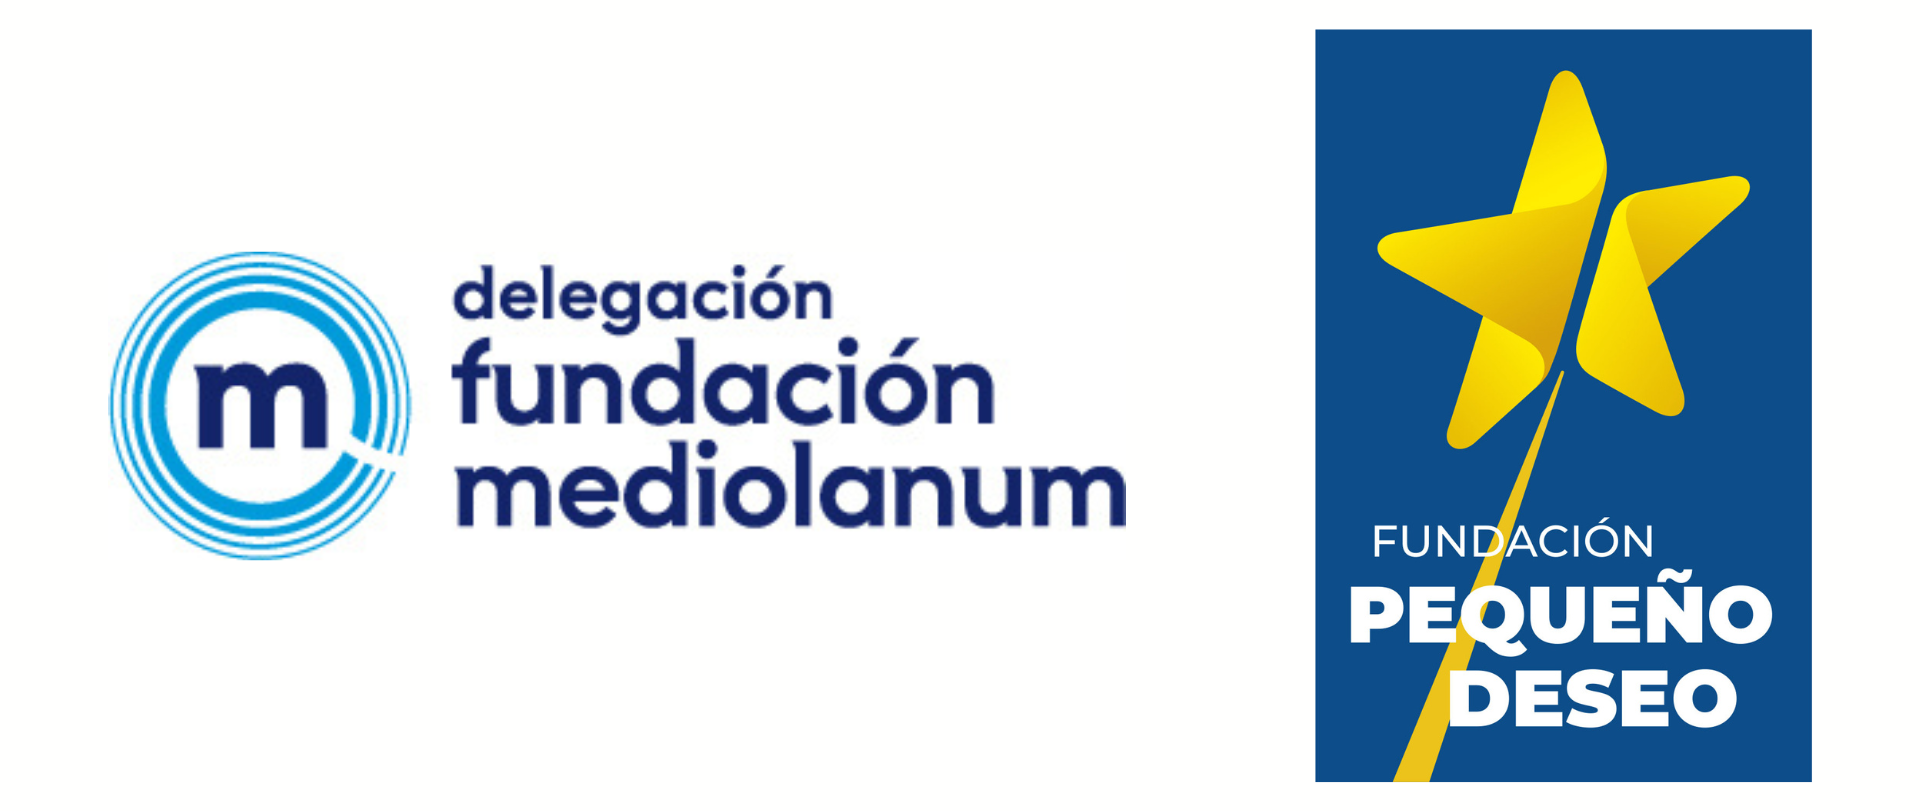 Delegación de la Fundación Mediolanum en España con Pequeño Deseo